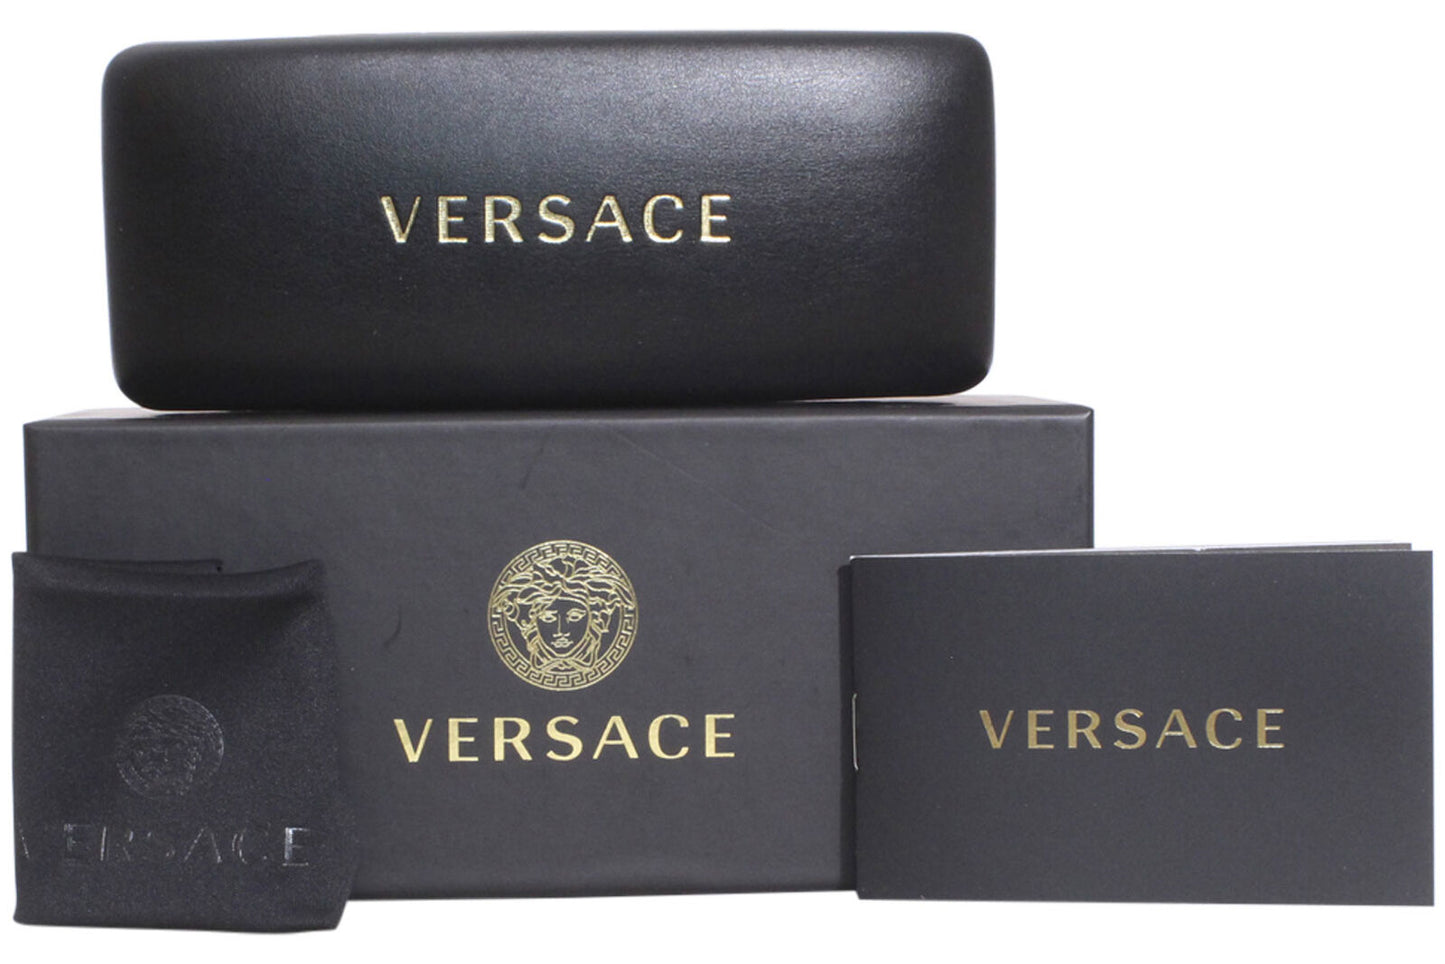 Versace 0VE3334-108 55mm New Eyeglasses